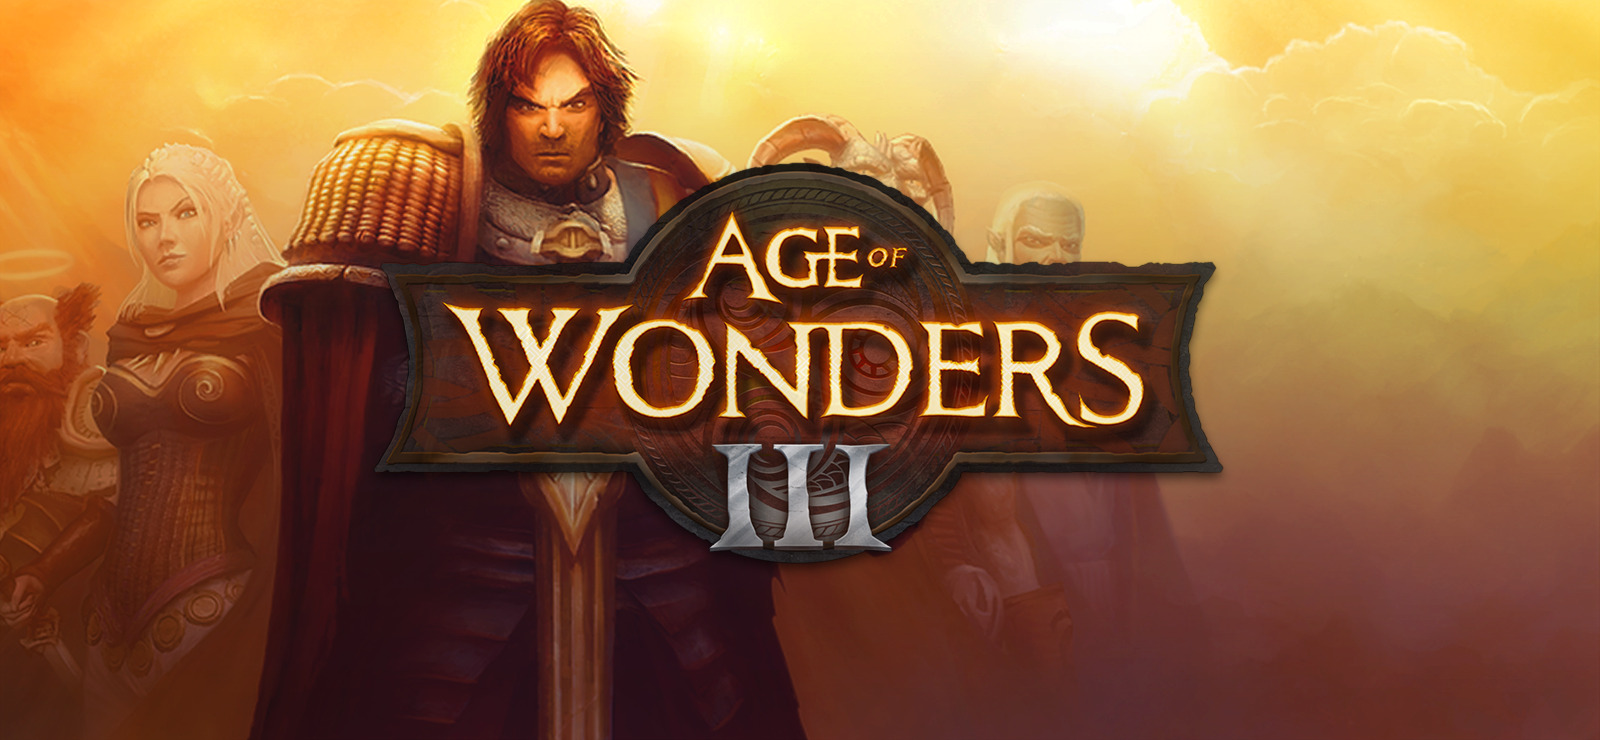 age of wonders 3 hero guide